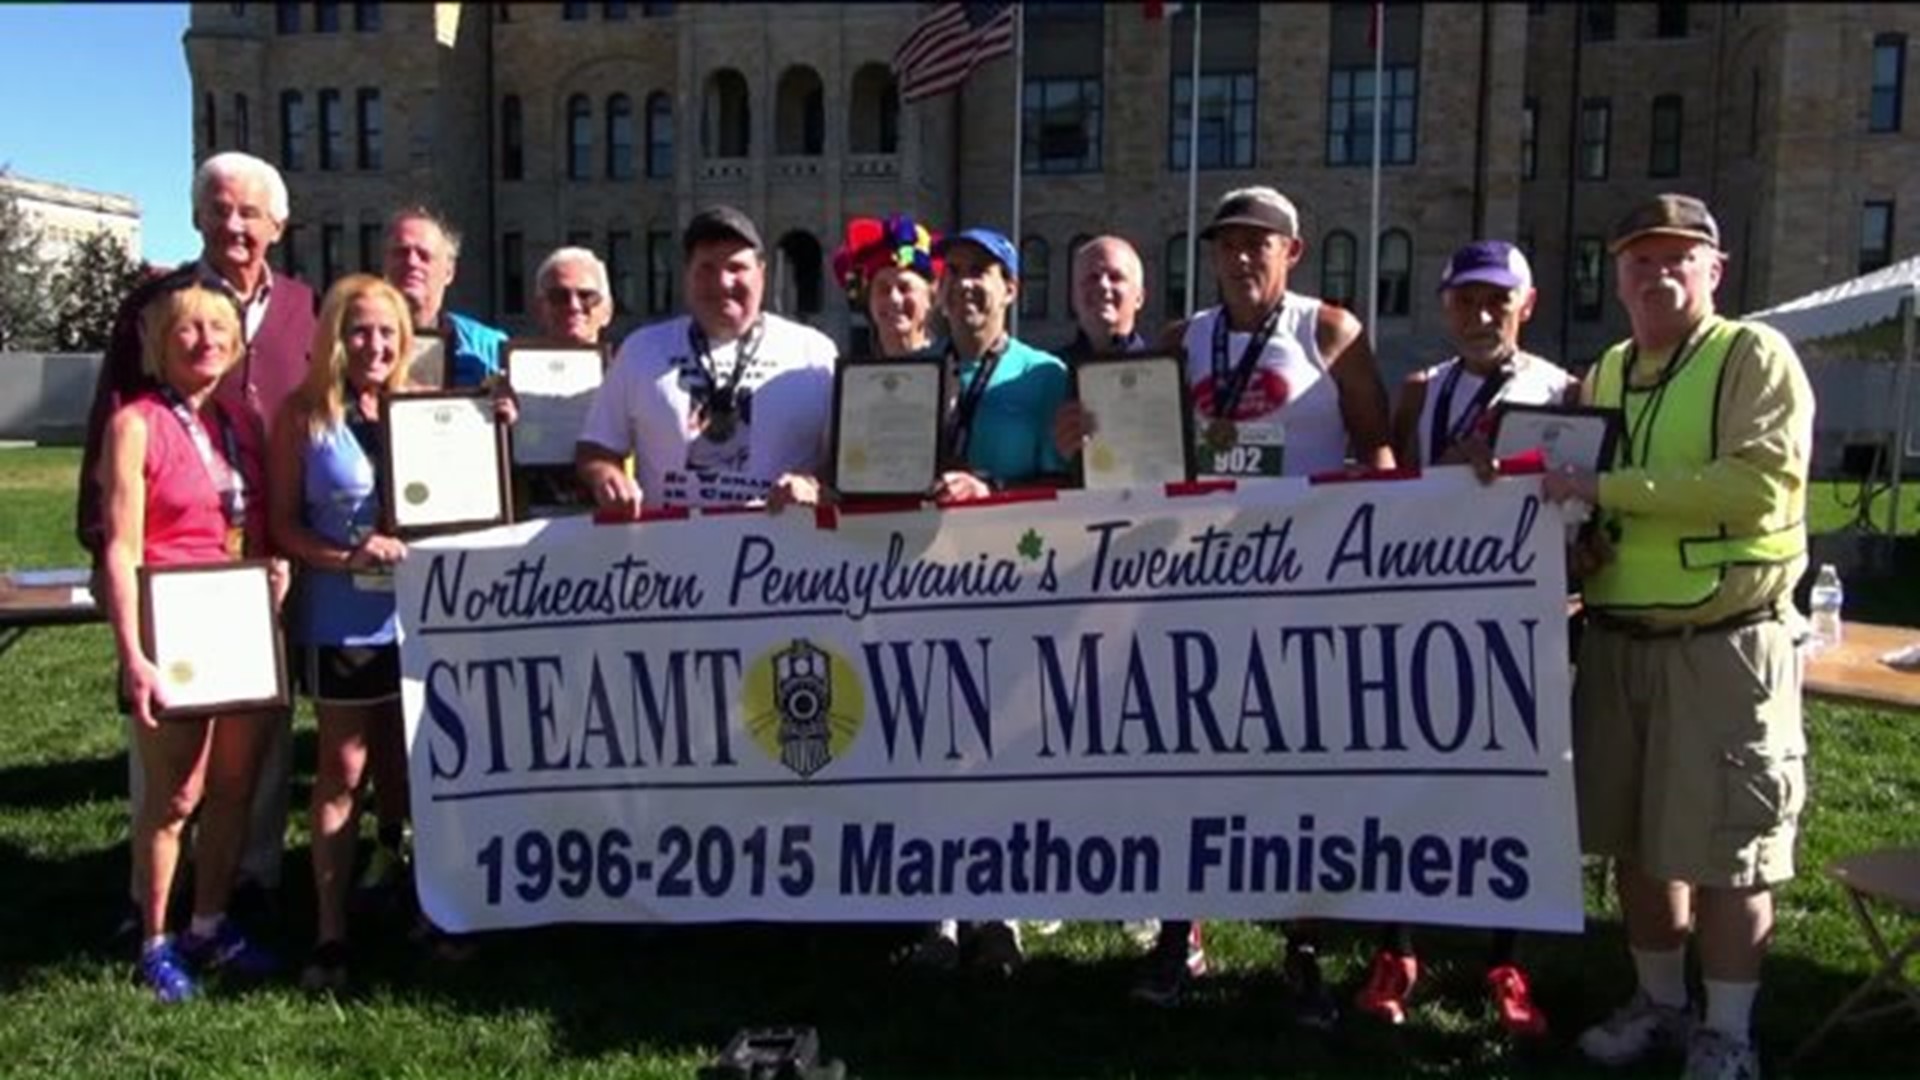 Steamtown Marathon Celebrates 20 Years